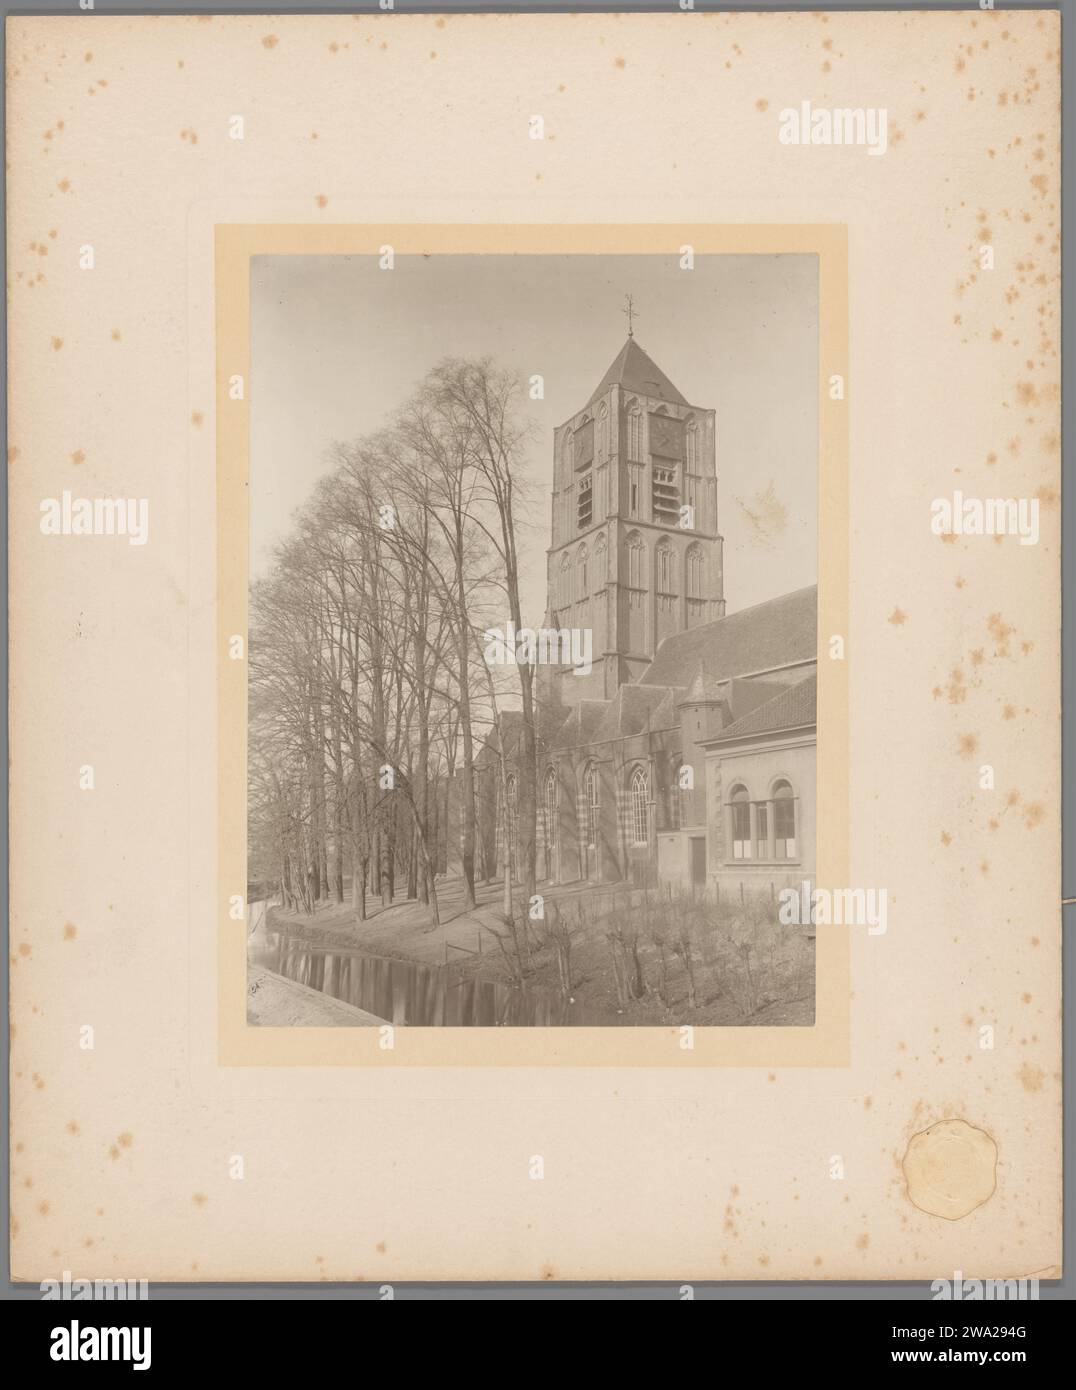 Blick auf die Grote oder Sint-Maartenskerk in Tiel, Henri Bickhoff, 1905 Fotografie Zutphen fotografische Unterstützung. Pappkirche (außen) groß oder Sint-Maartenskerk Stockfoto